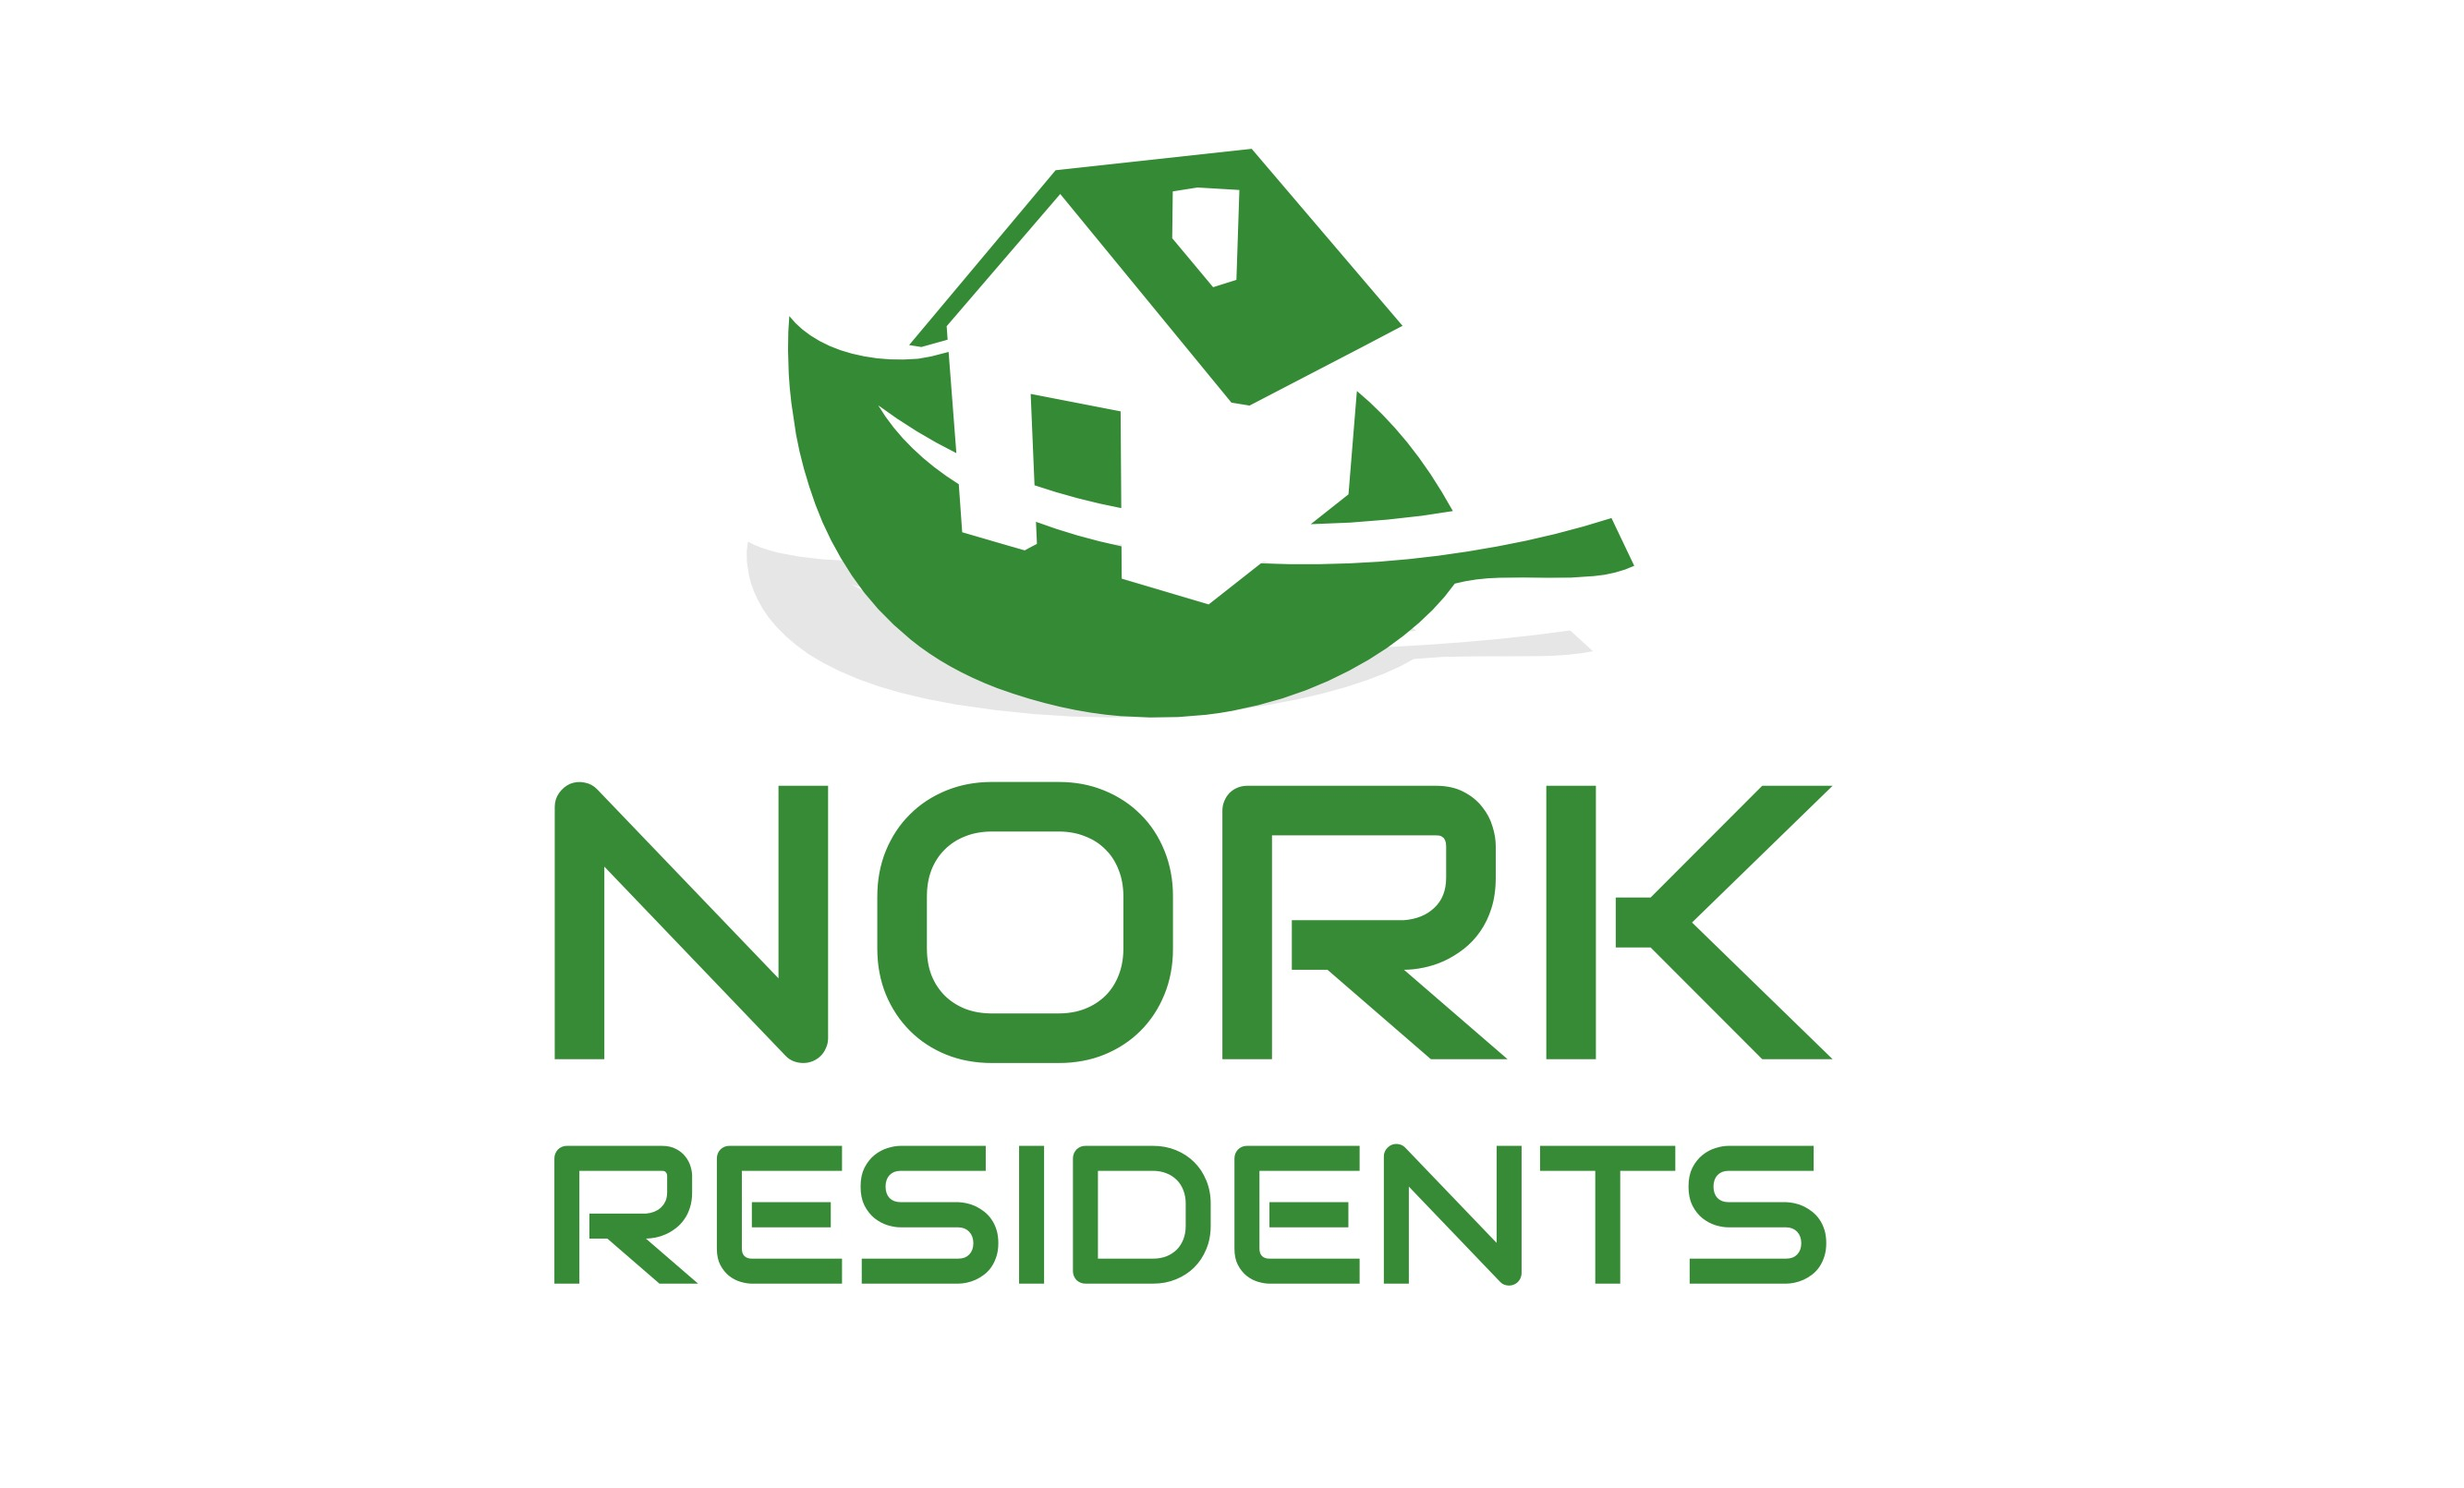 (c) Nork-residents.org.uk